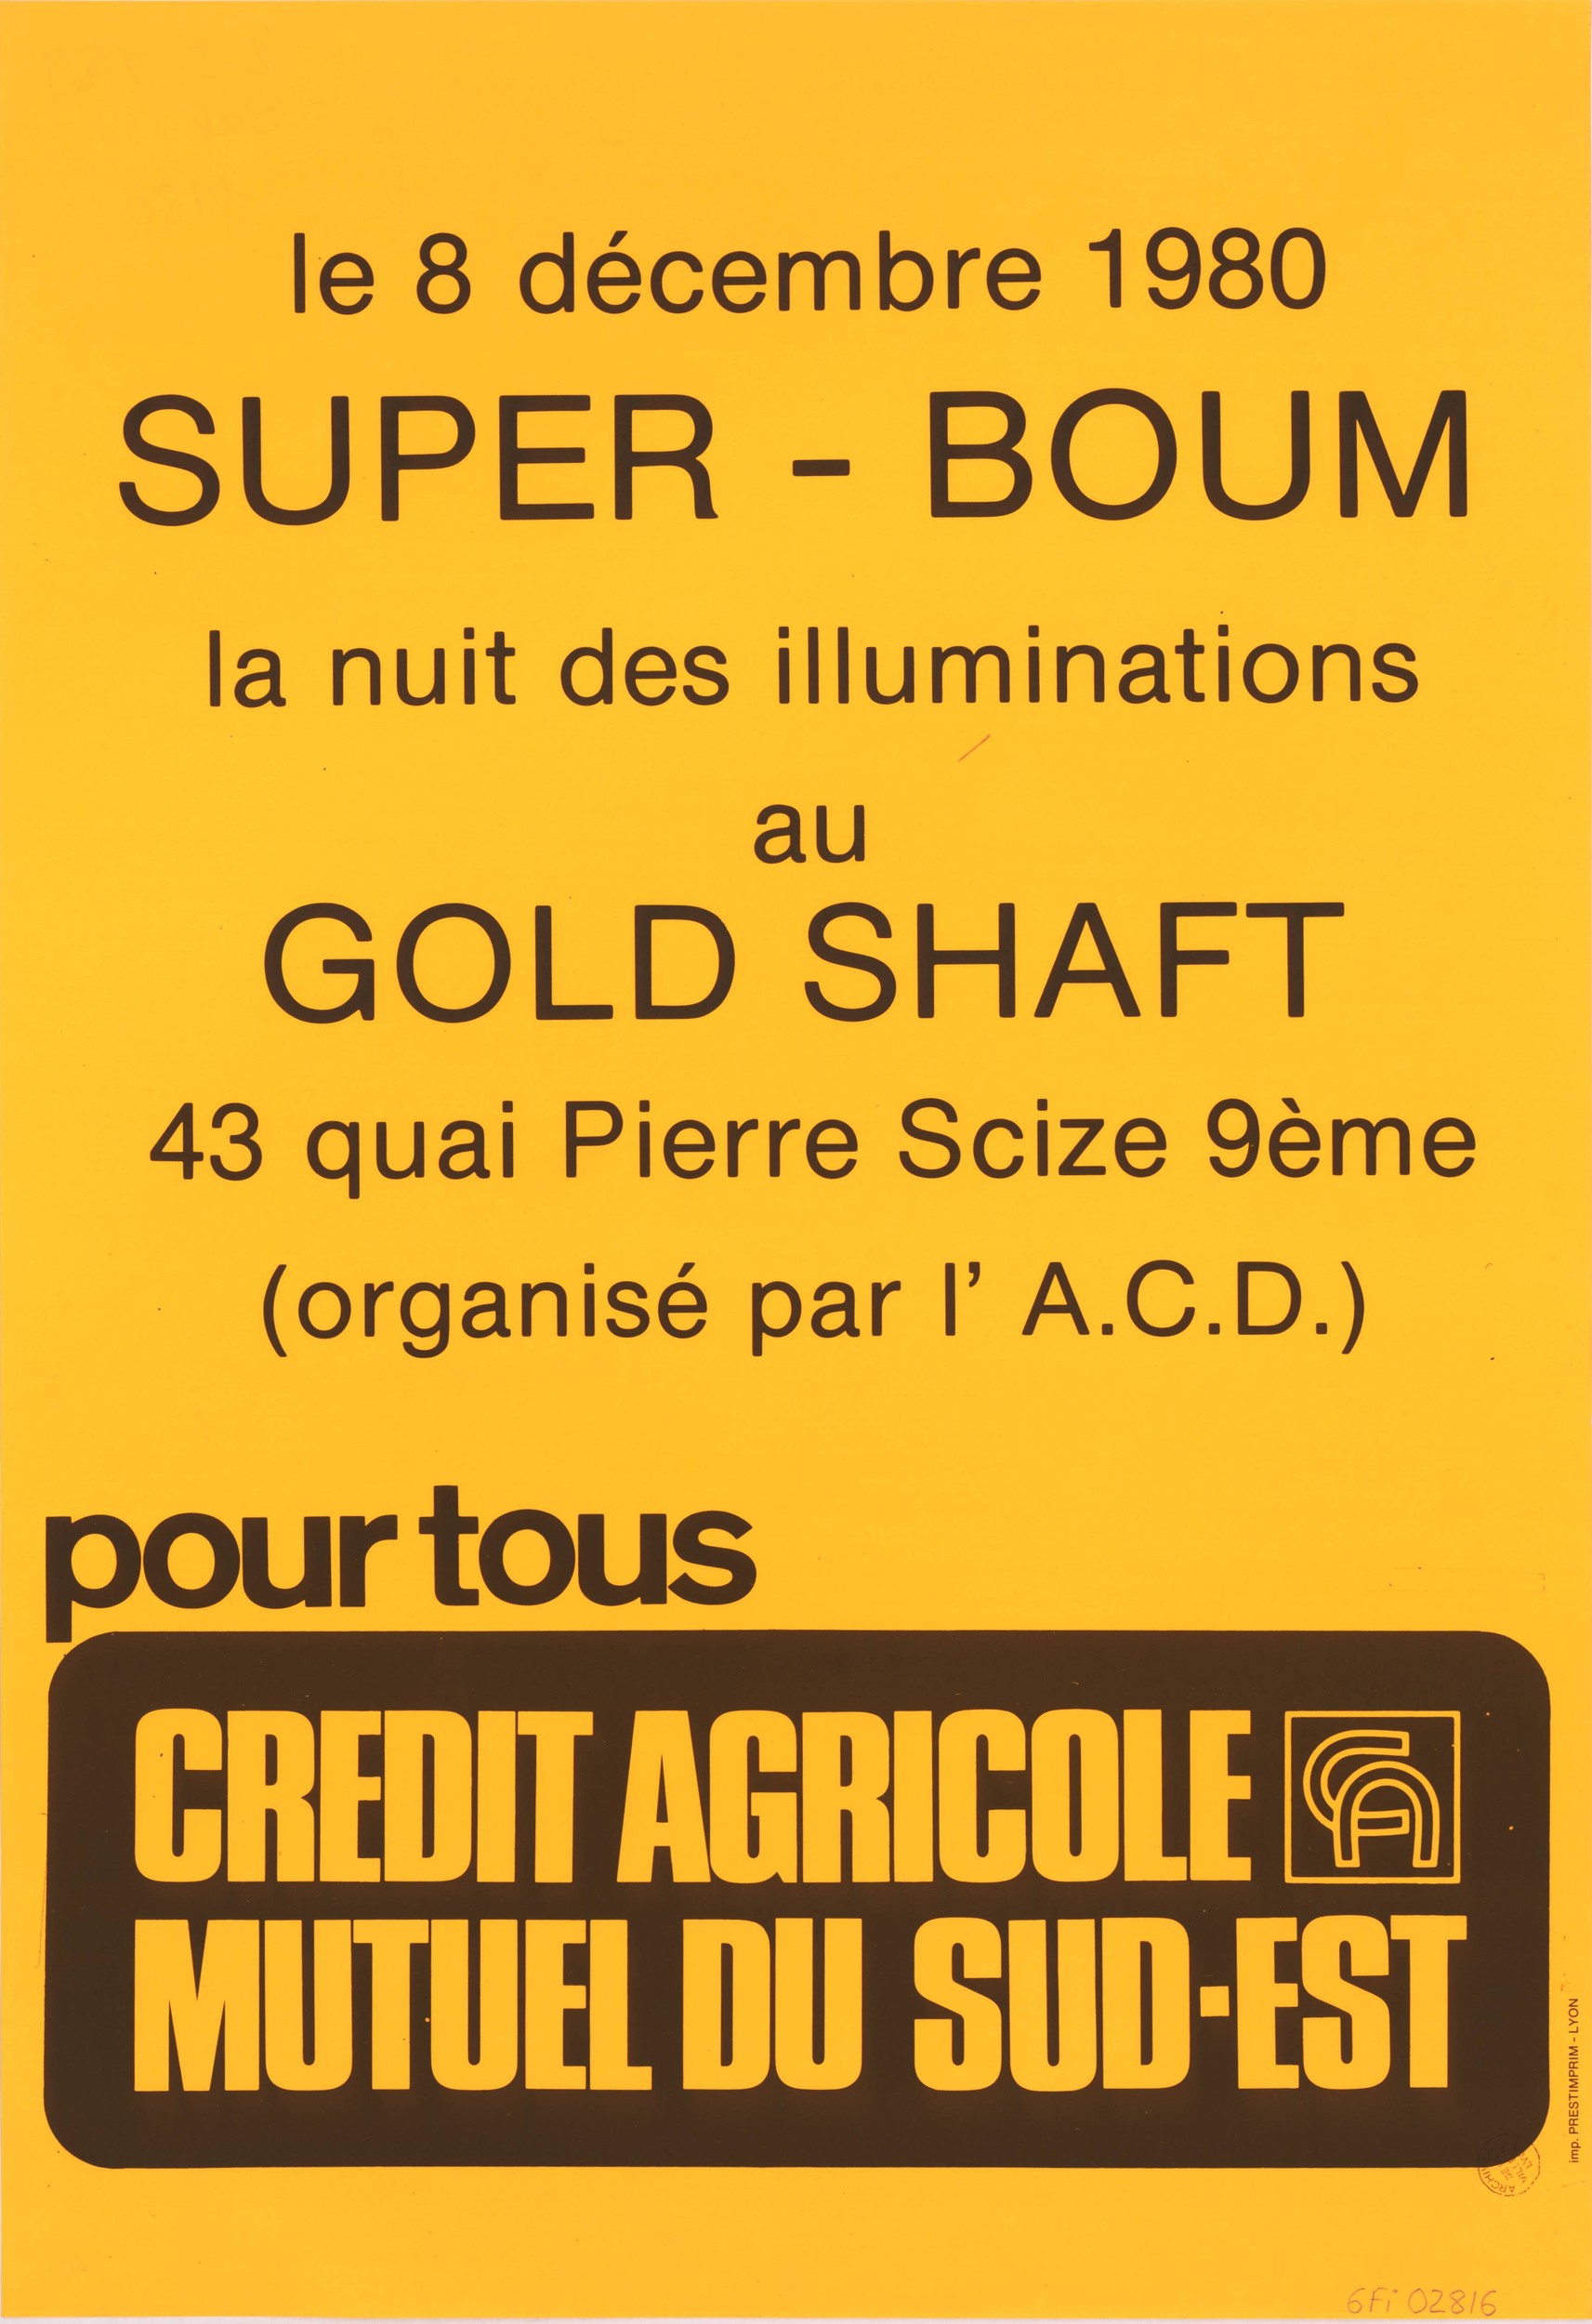 Le 8 décembre 1980 Super-Boum la nuit des illuminations au Gold Shaft : affiche (8/12/1980, cote : 6FI/2816, repro. à usage privé)